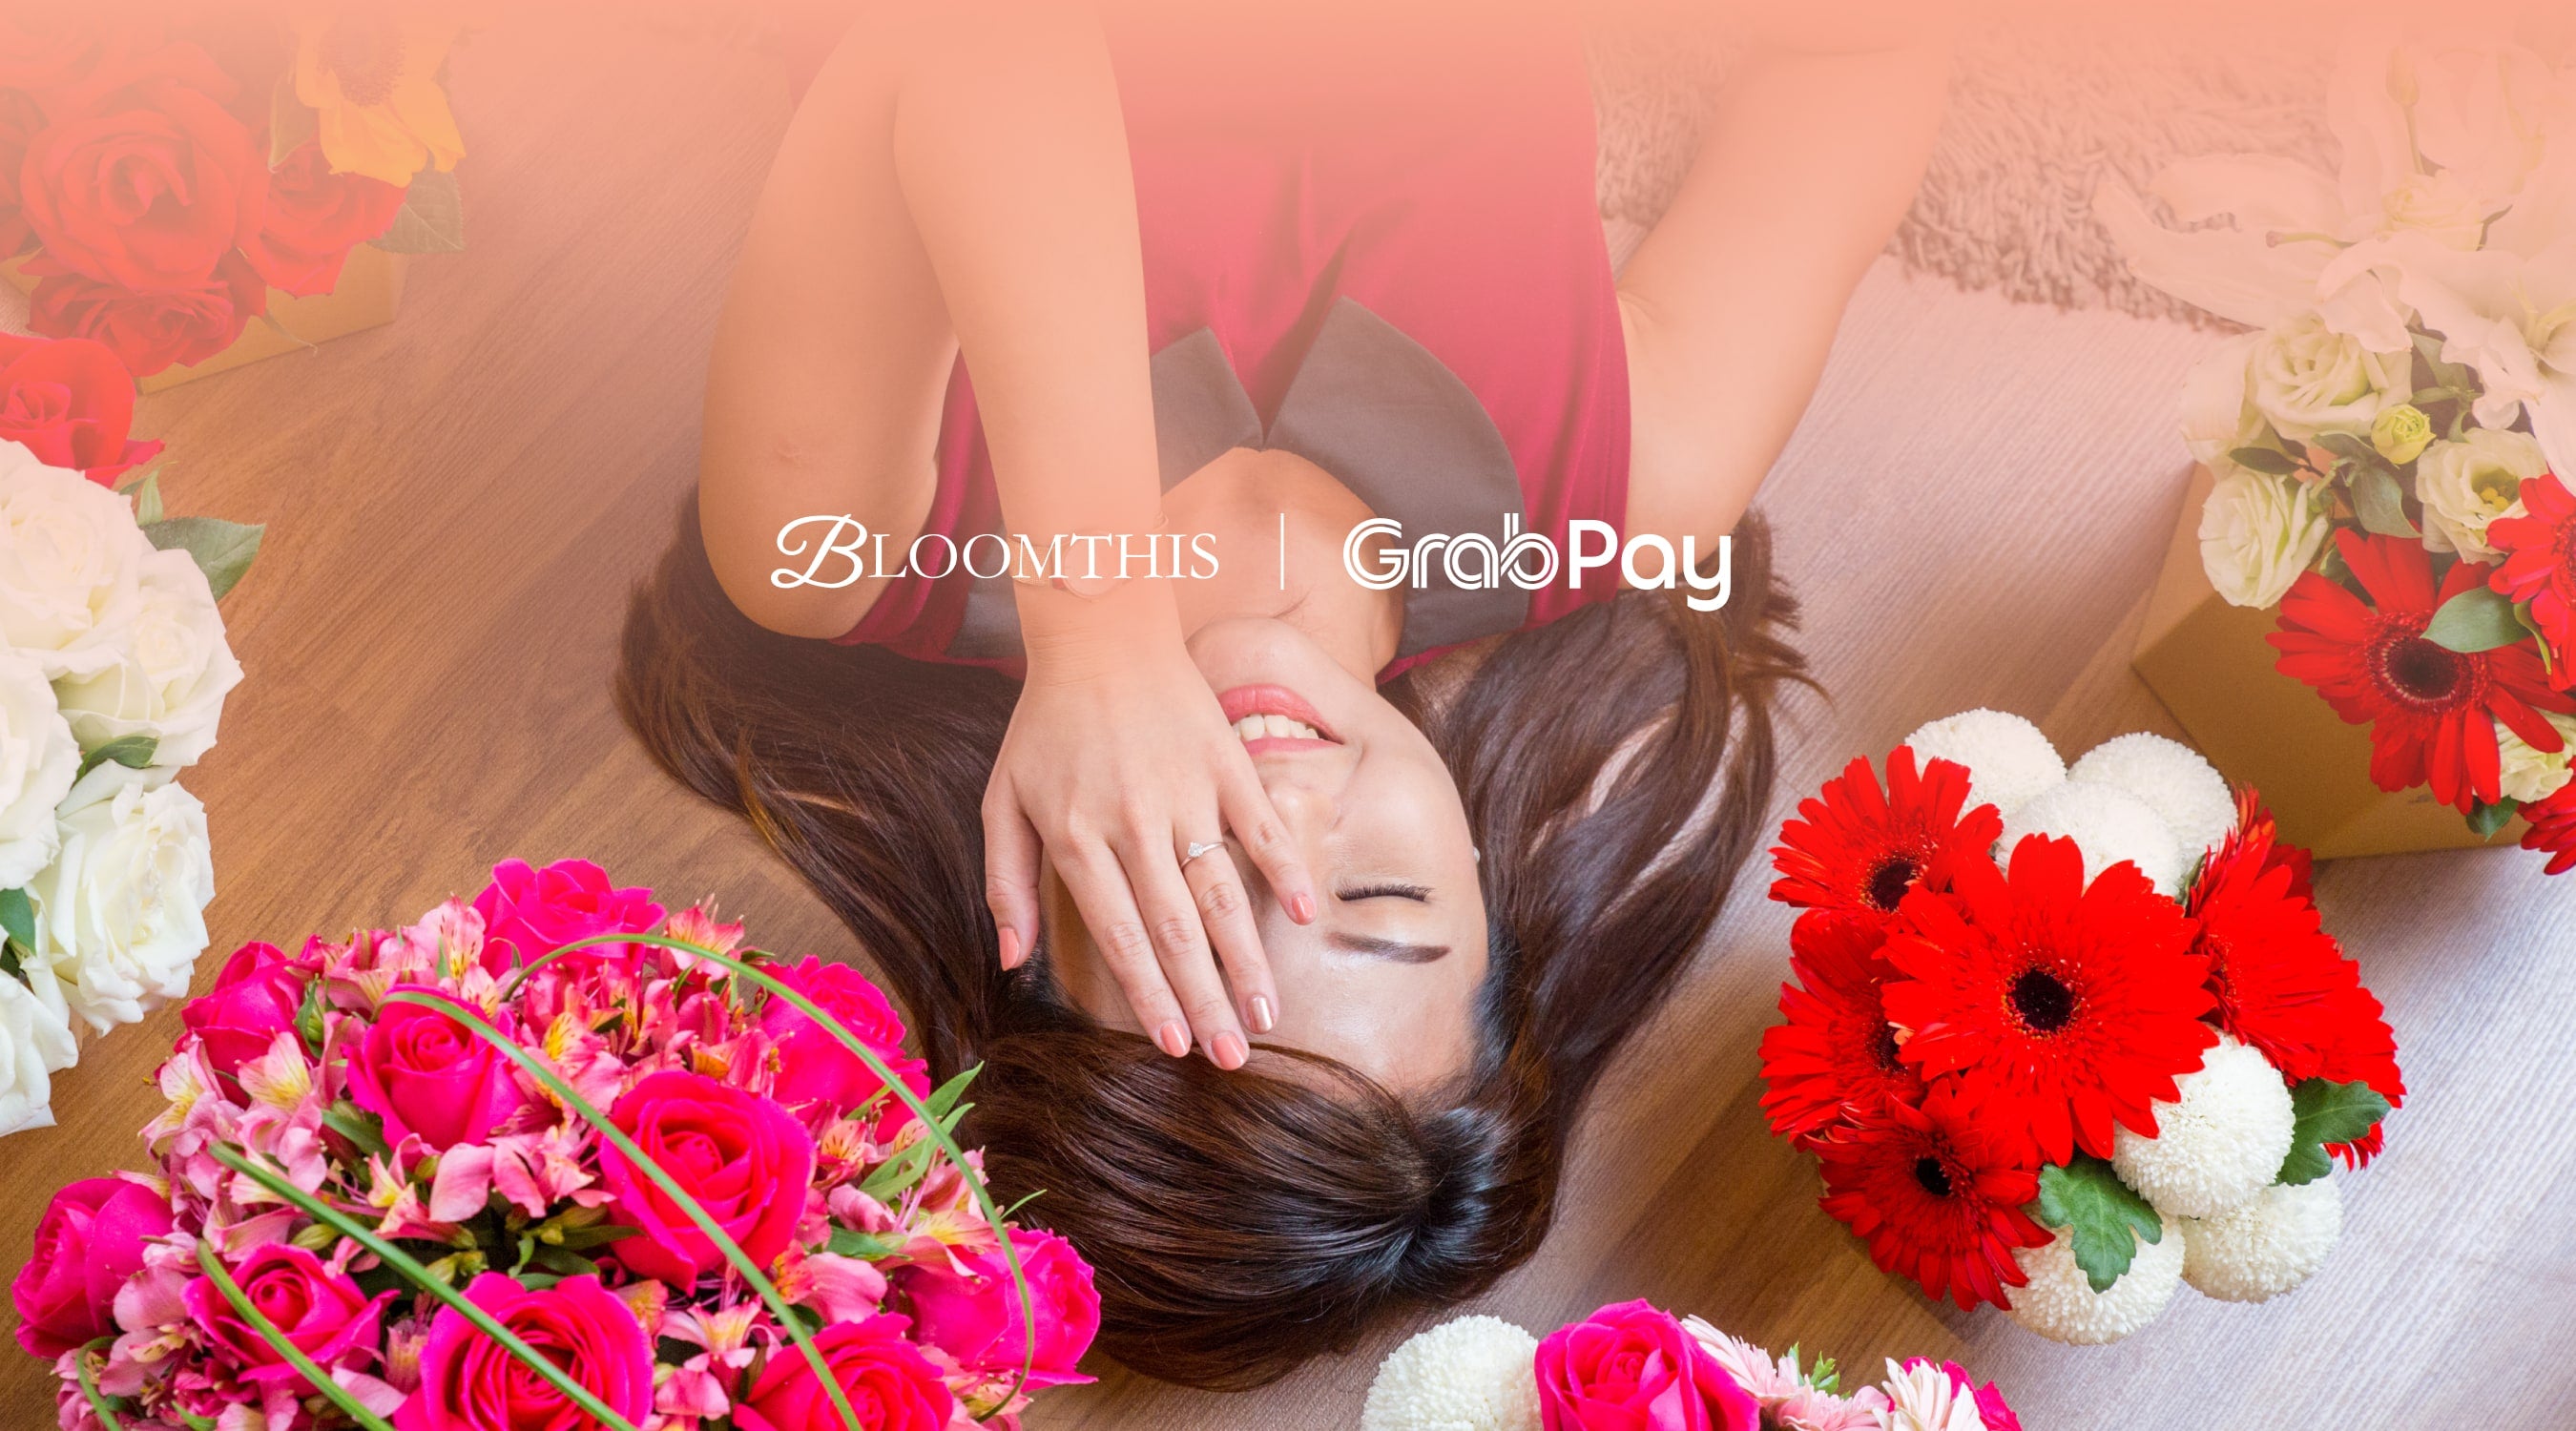 bloomthis-grabpay-deals